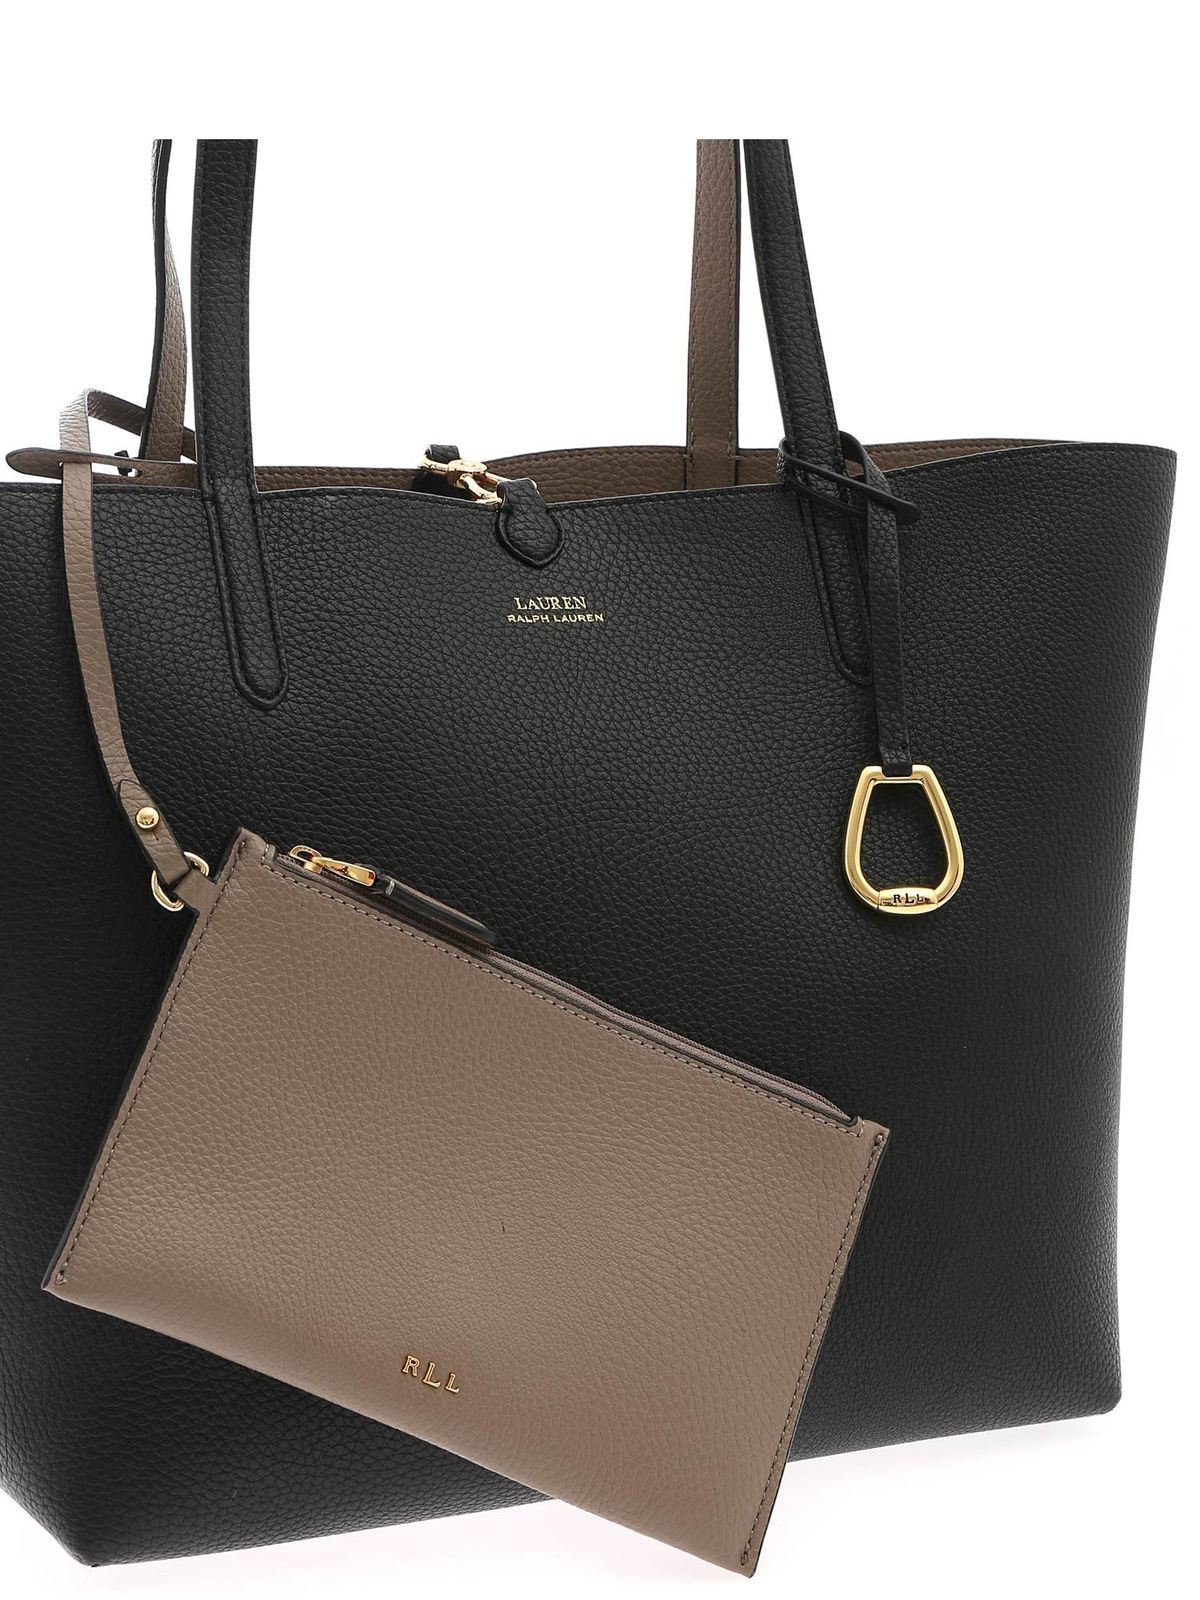 LAUREN RALPH LAUREN: handbag for women - Brown | Lauren Ralph Lauren handbag  431876724005 online at GIGLIO.COM